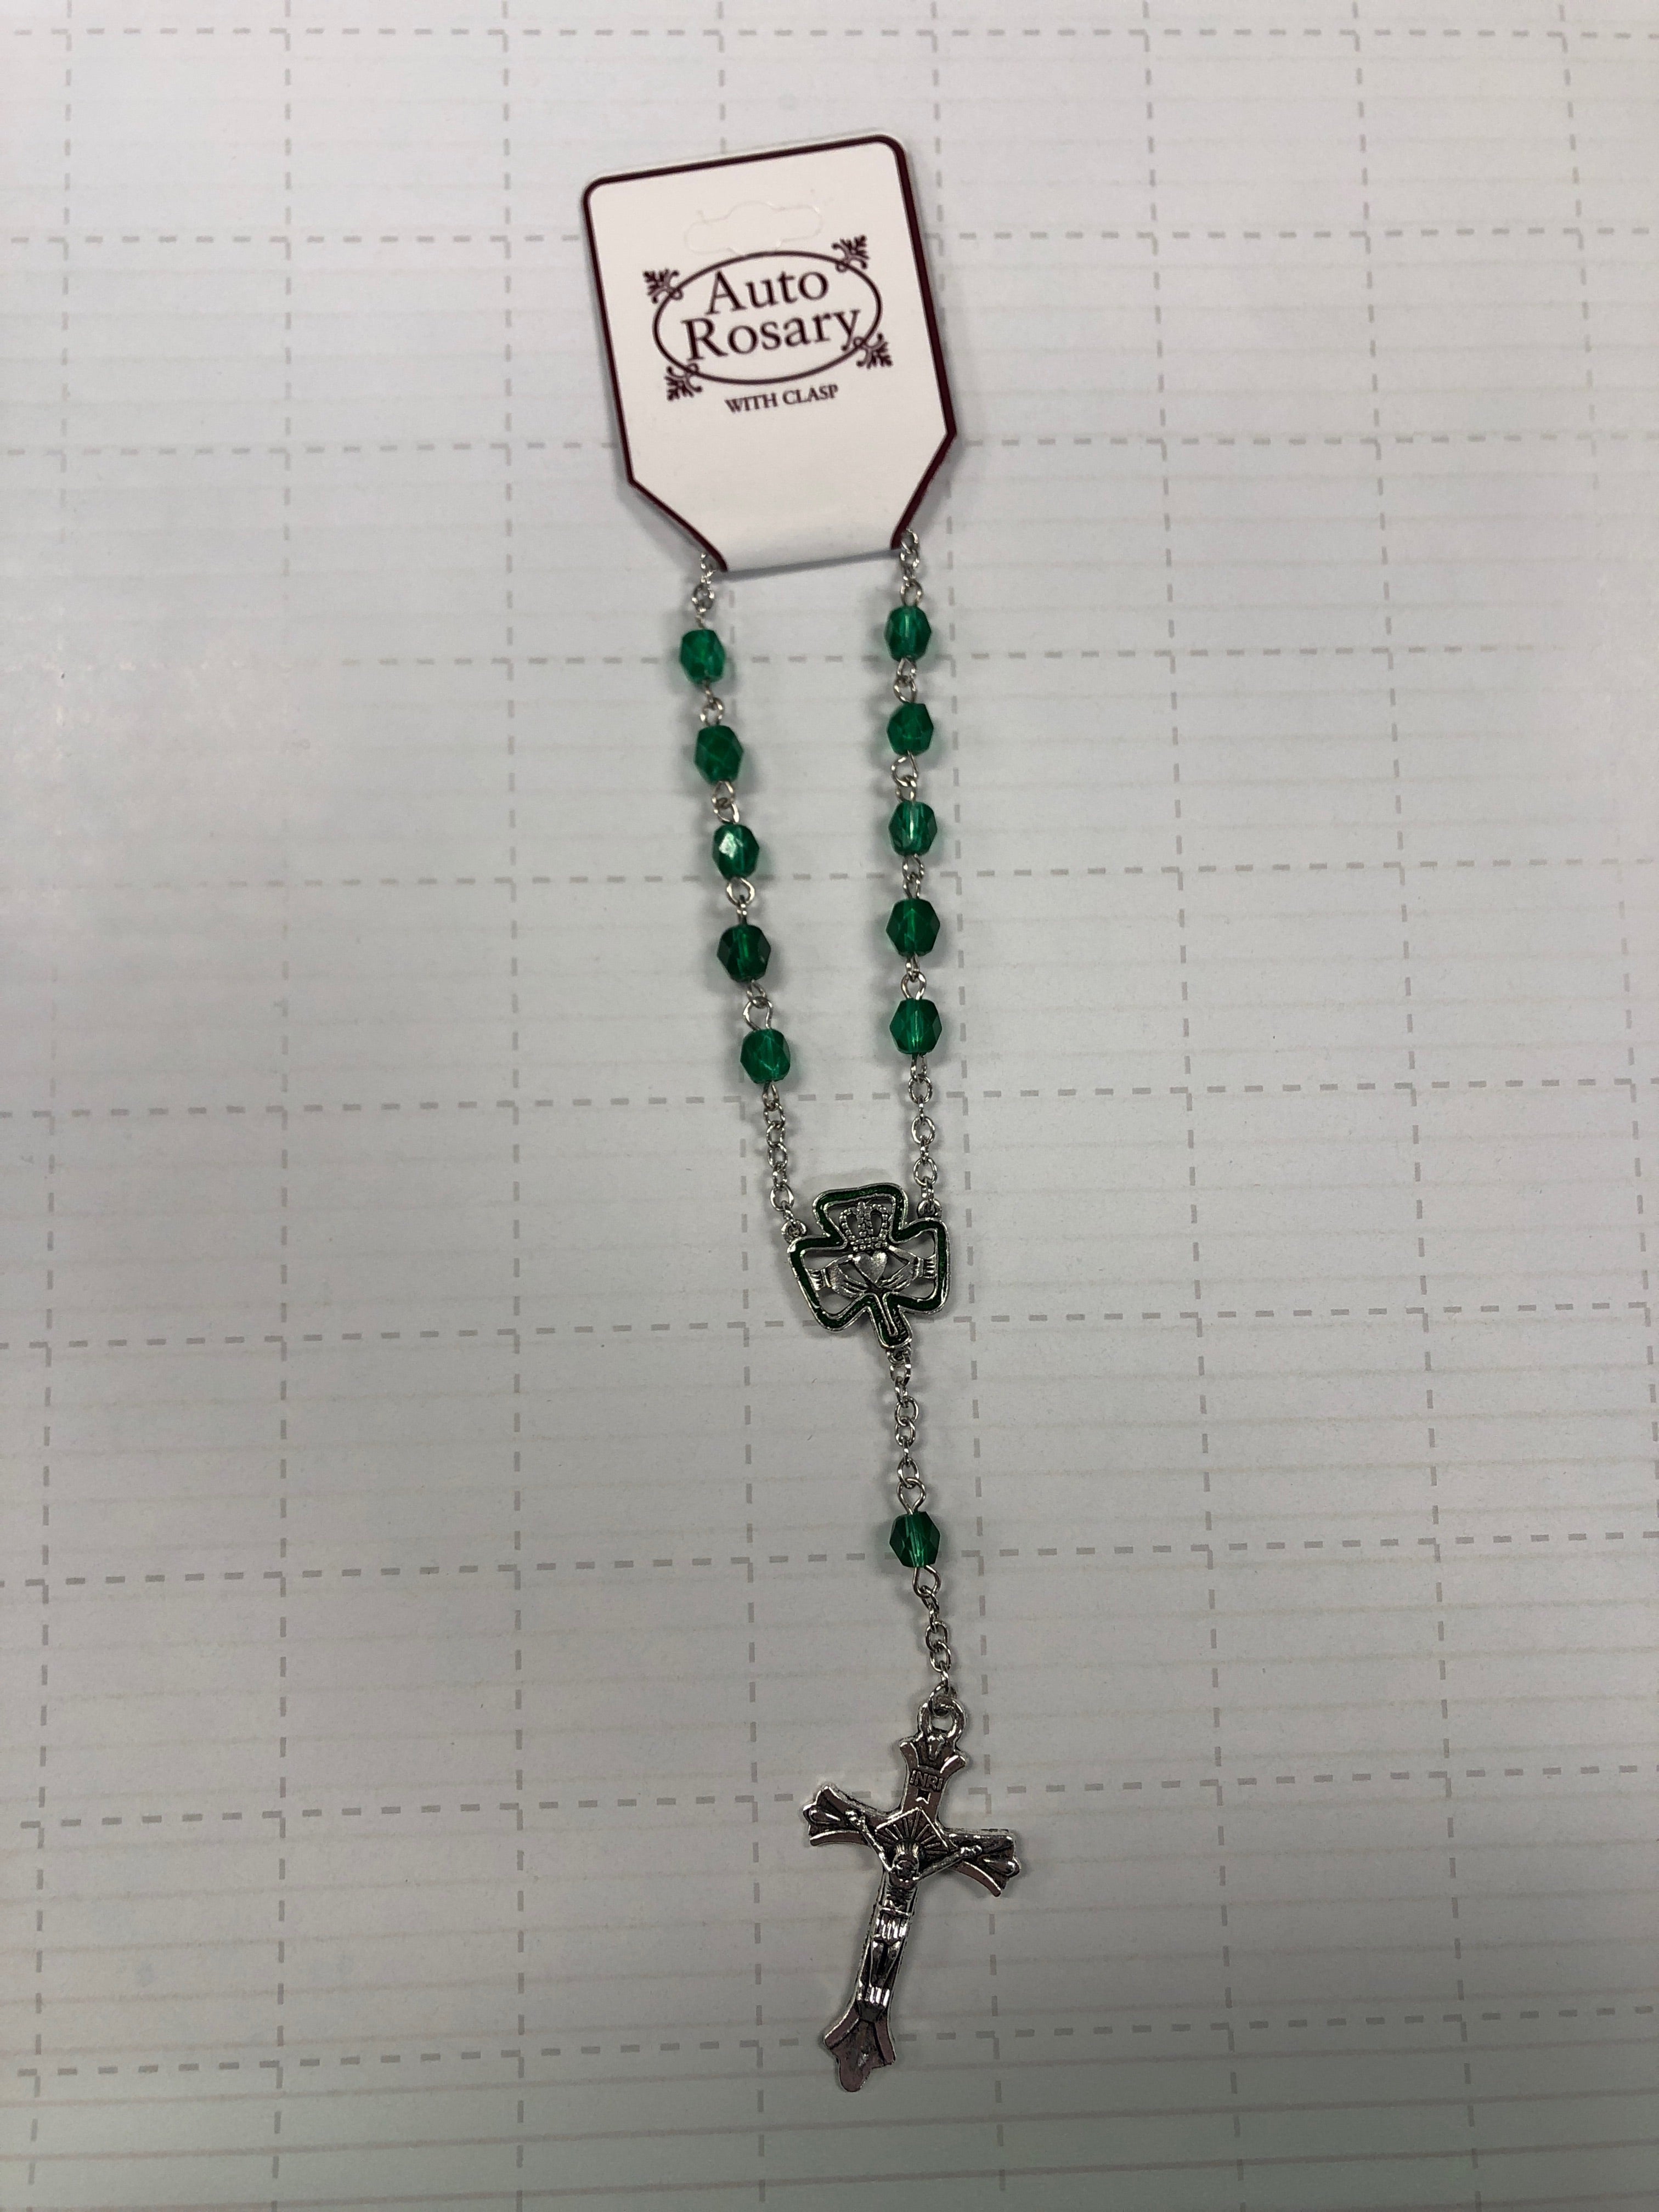 Irish auto rosary